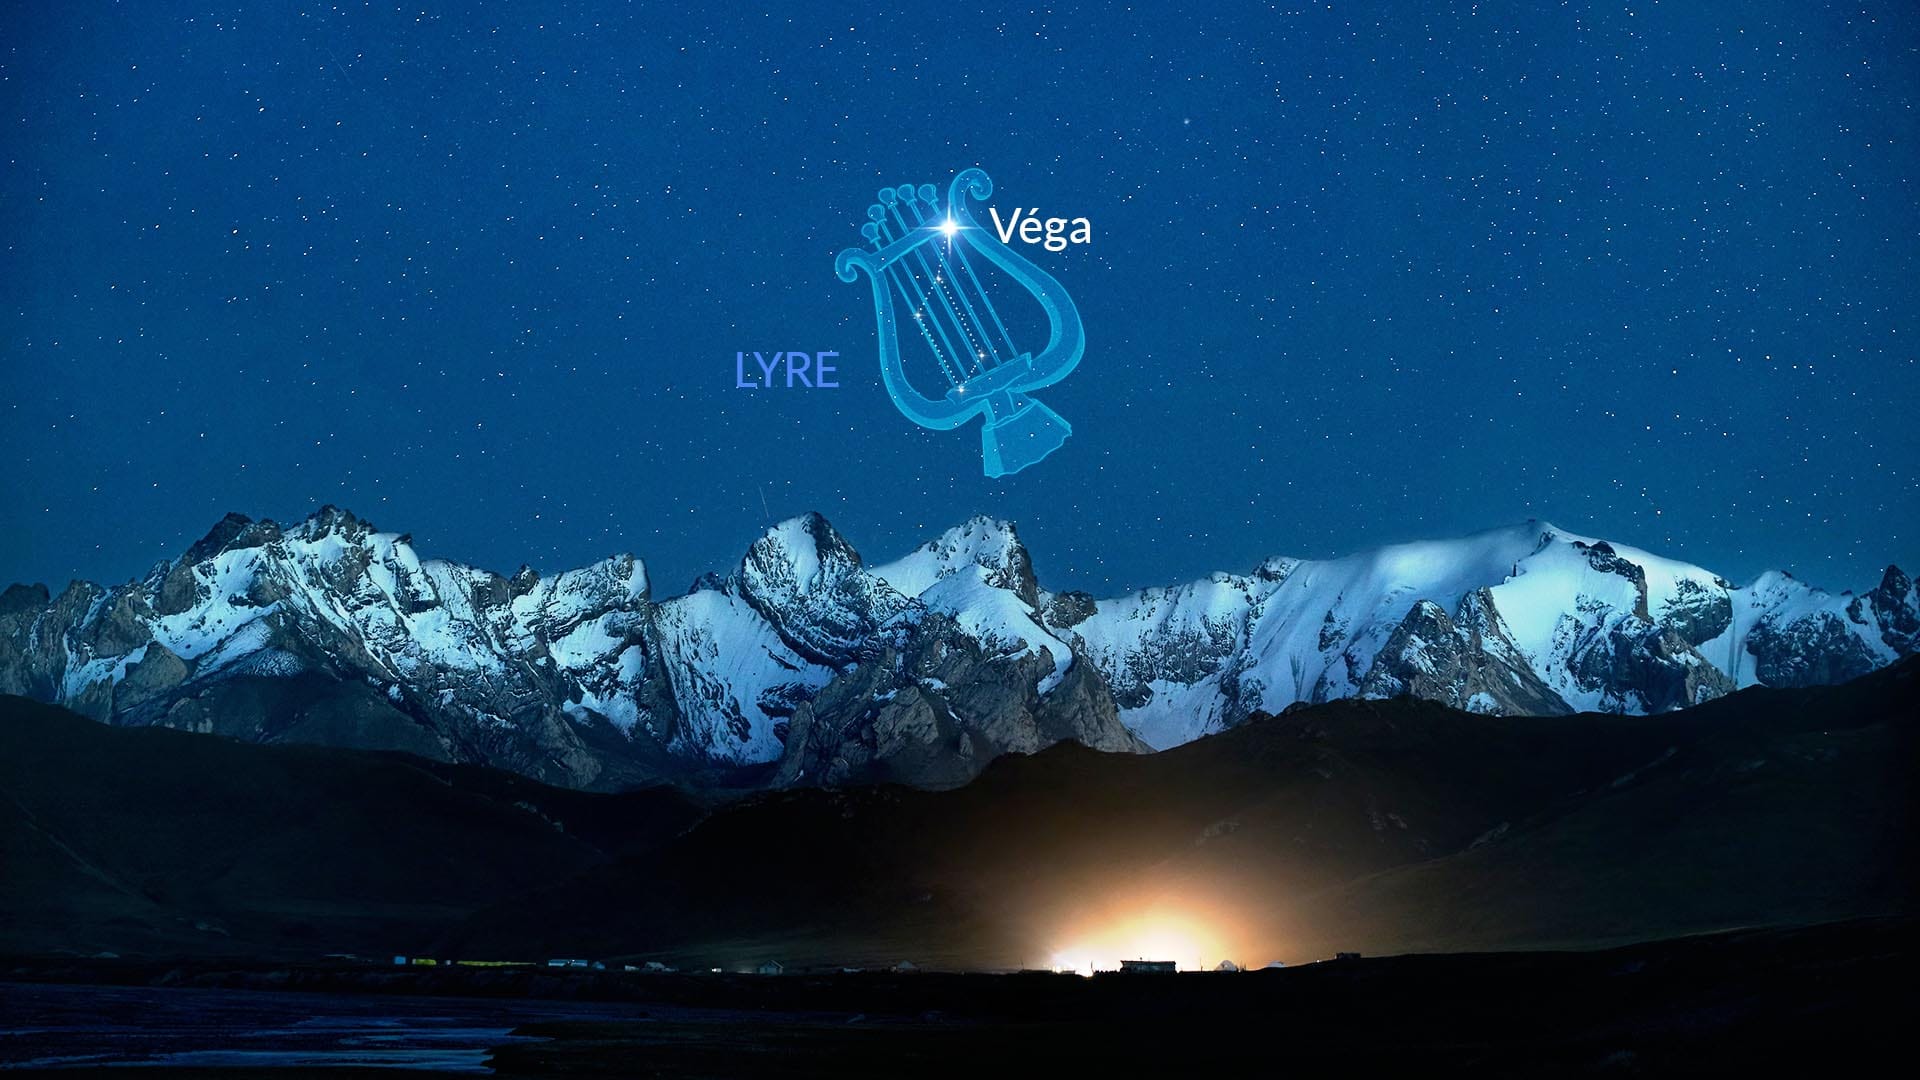 Vega in Lyra